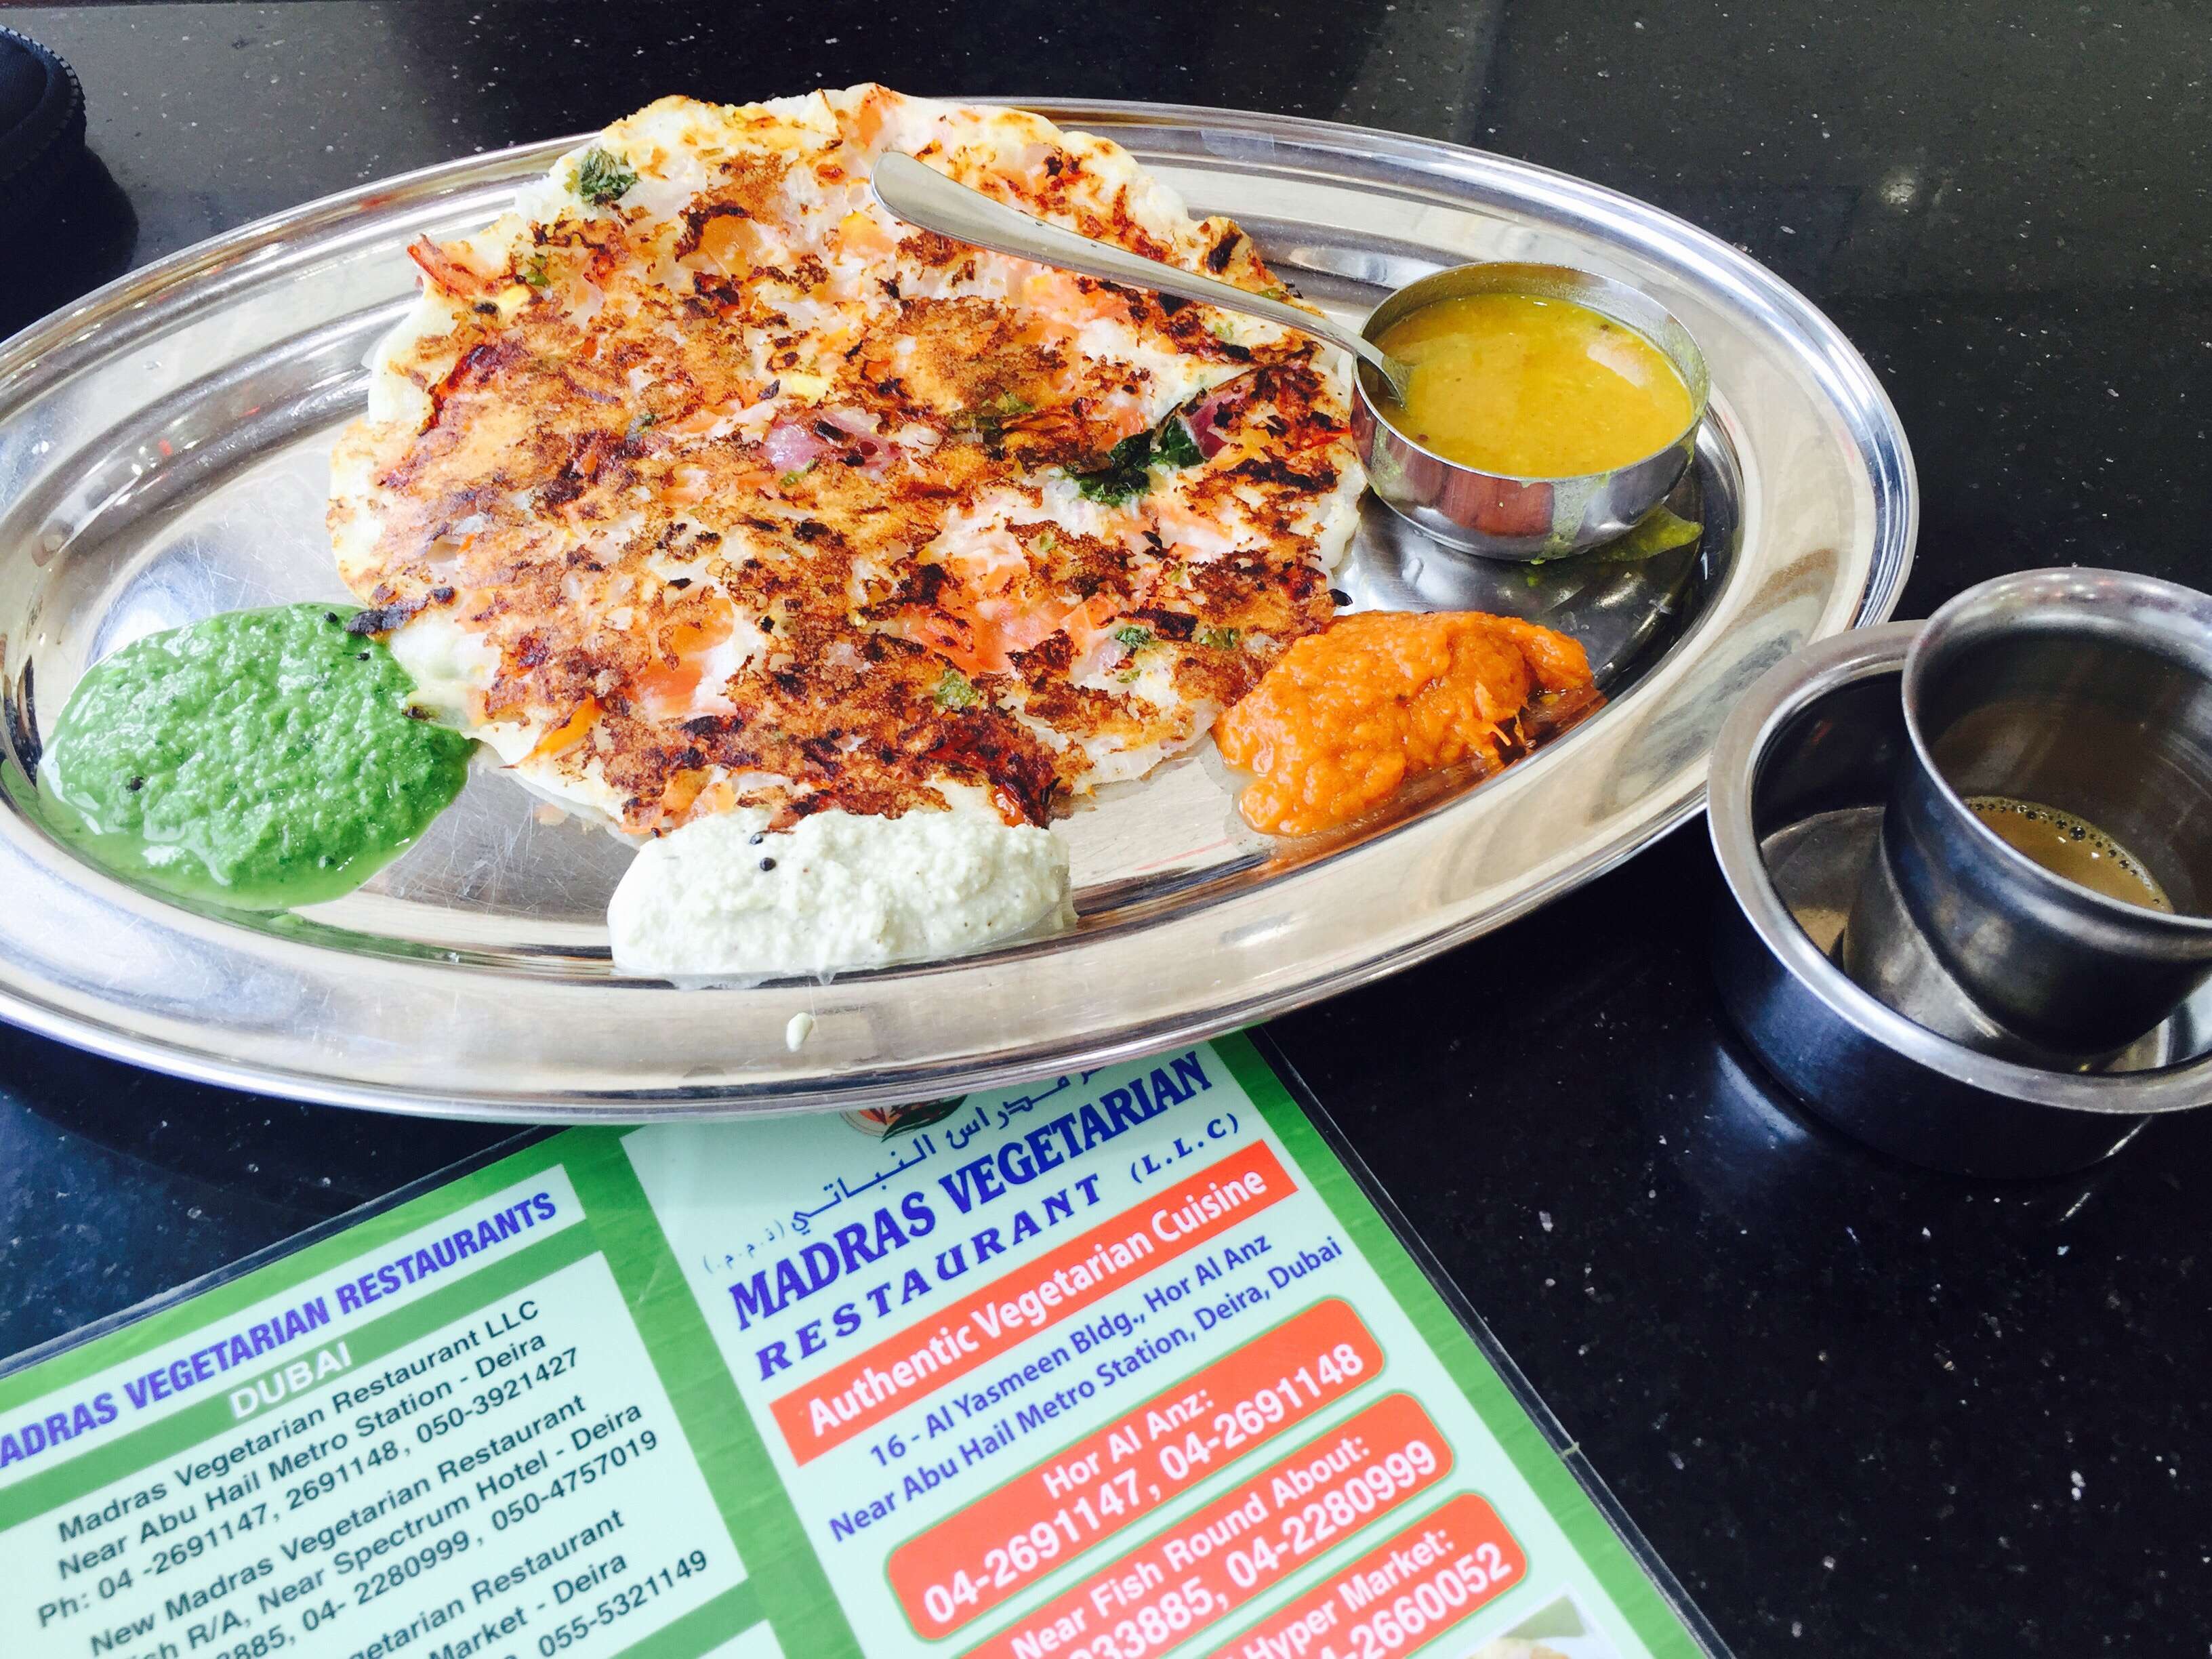 Madras Star Vegetarian Restaurant